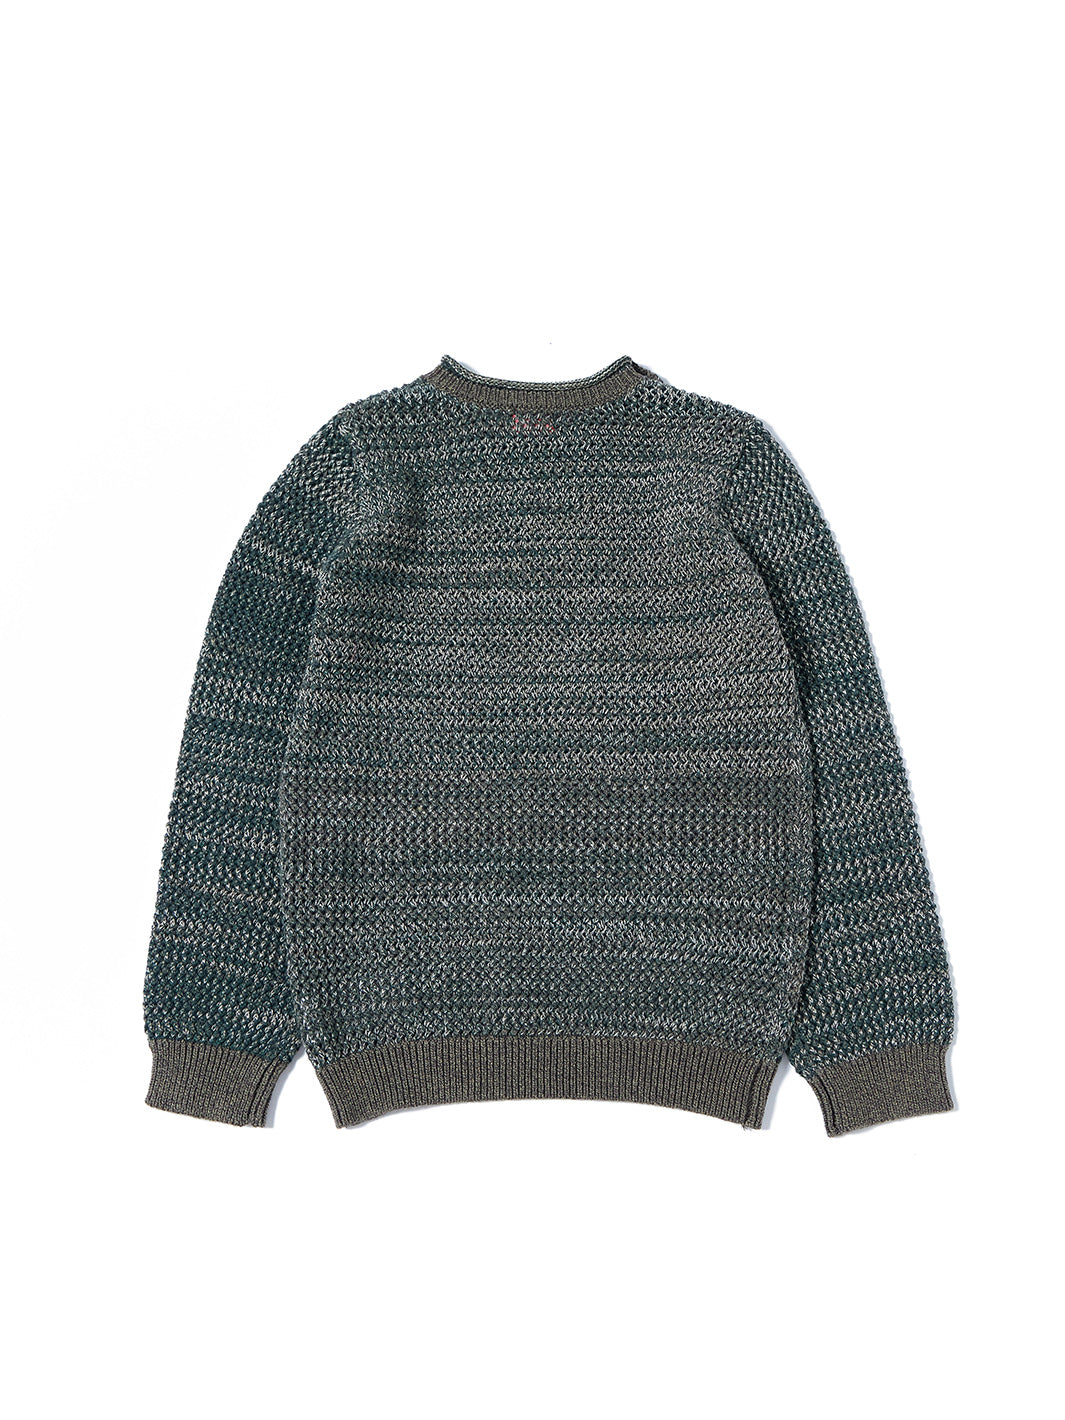 Crochet Shoulder Buttons Sweater - Green Mix